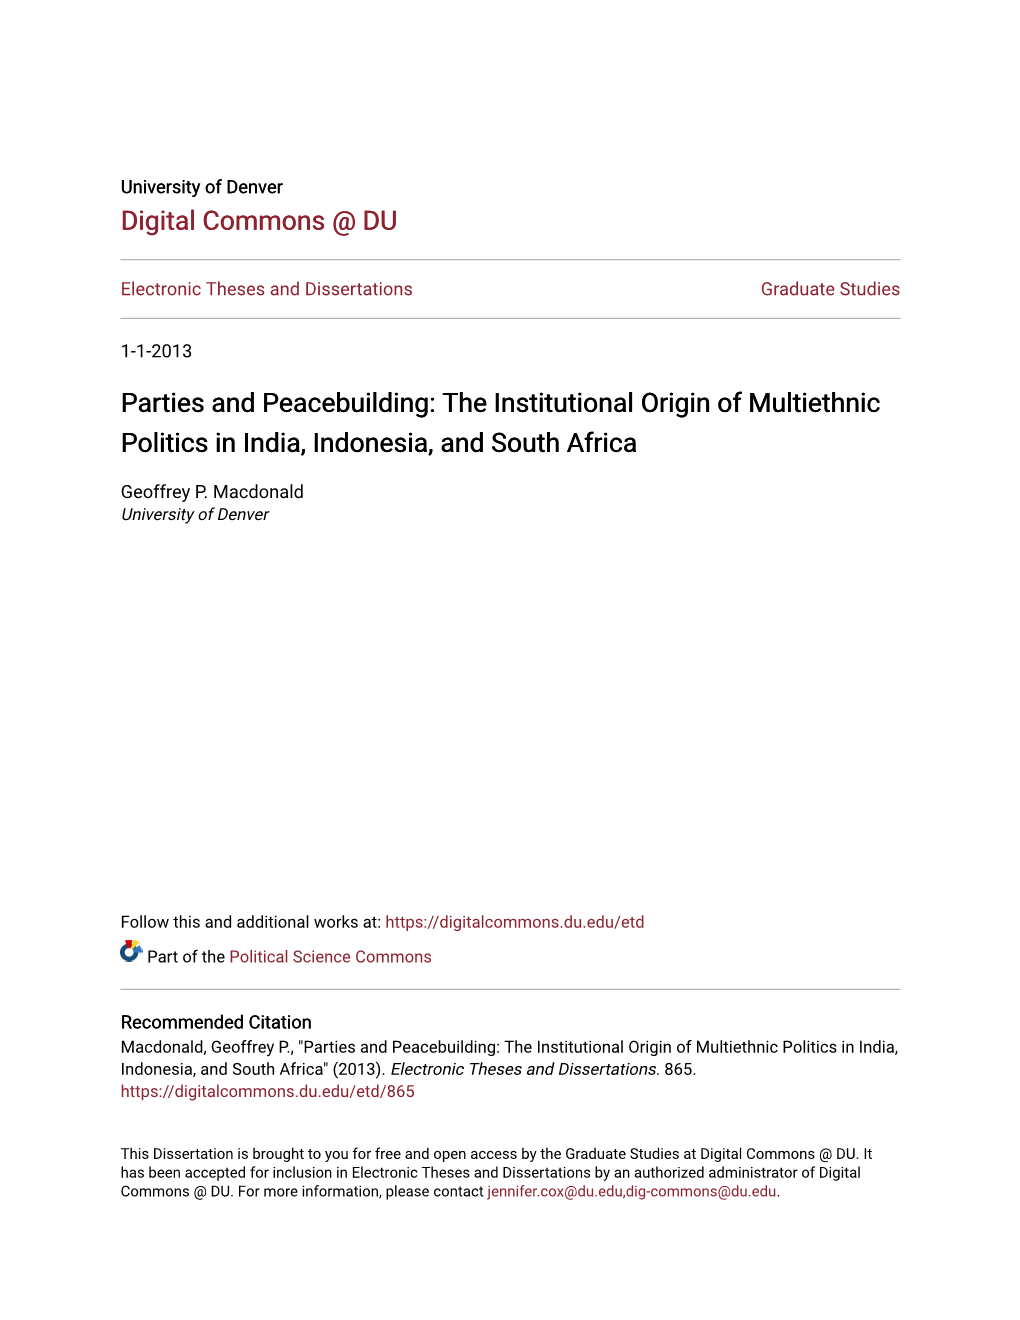 The Institutional Origin of Multiethnic Politics in India, Indonesia, and South Africa